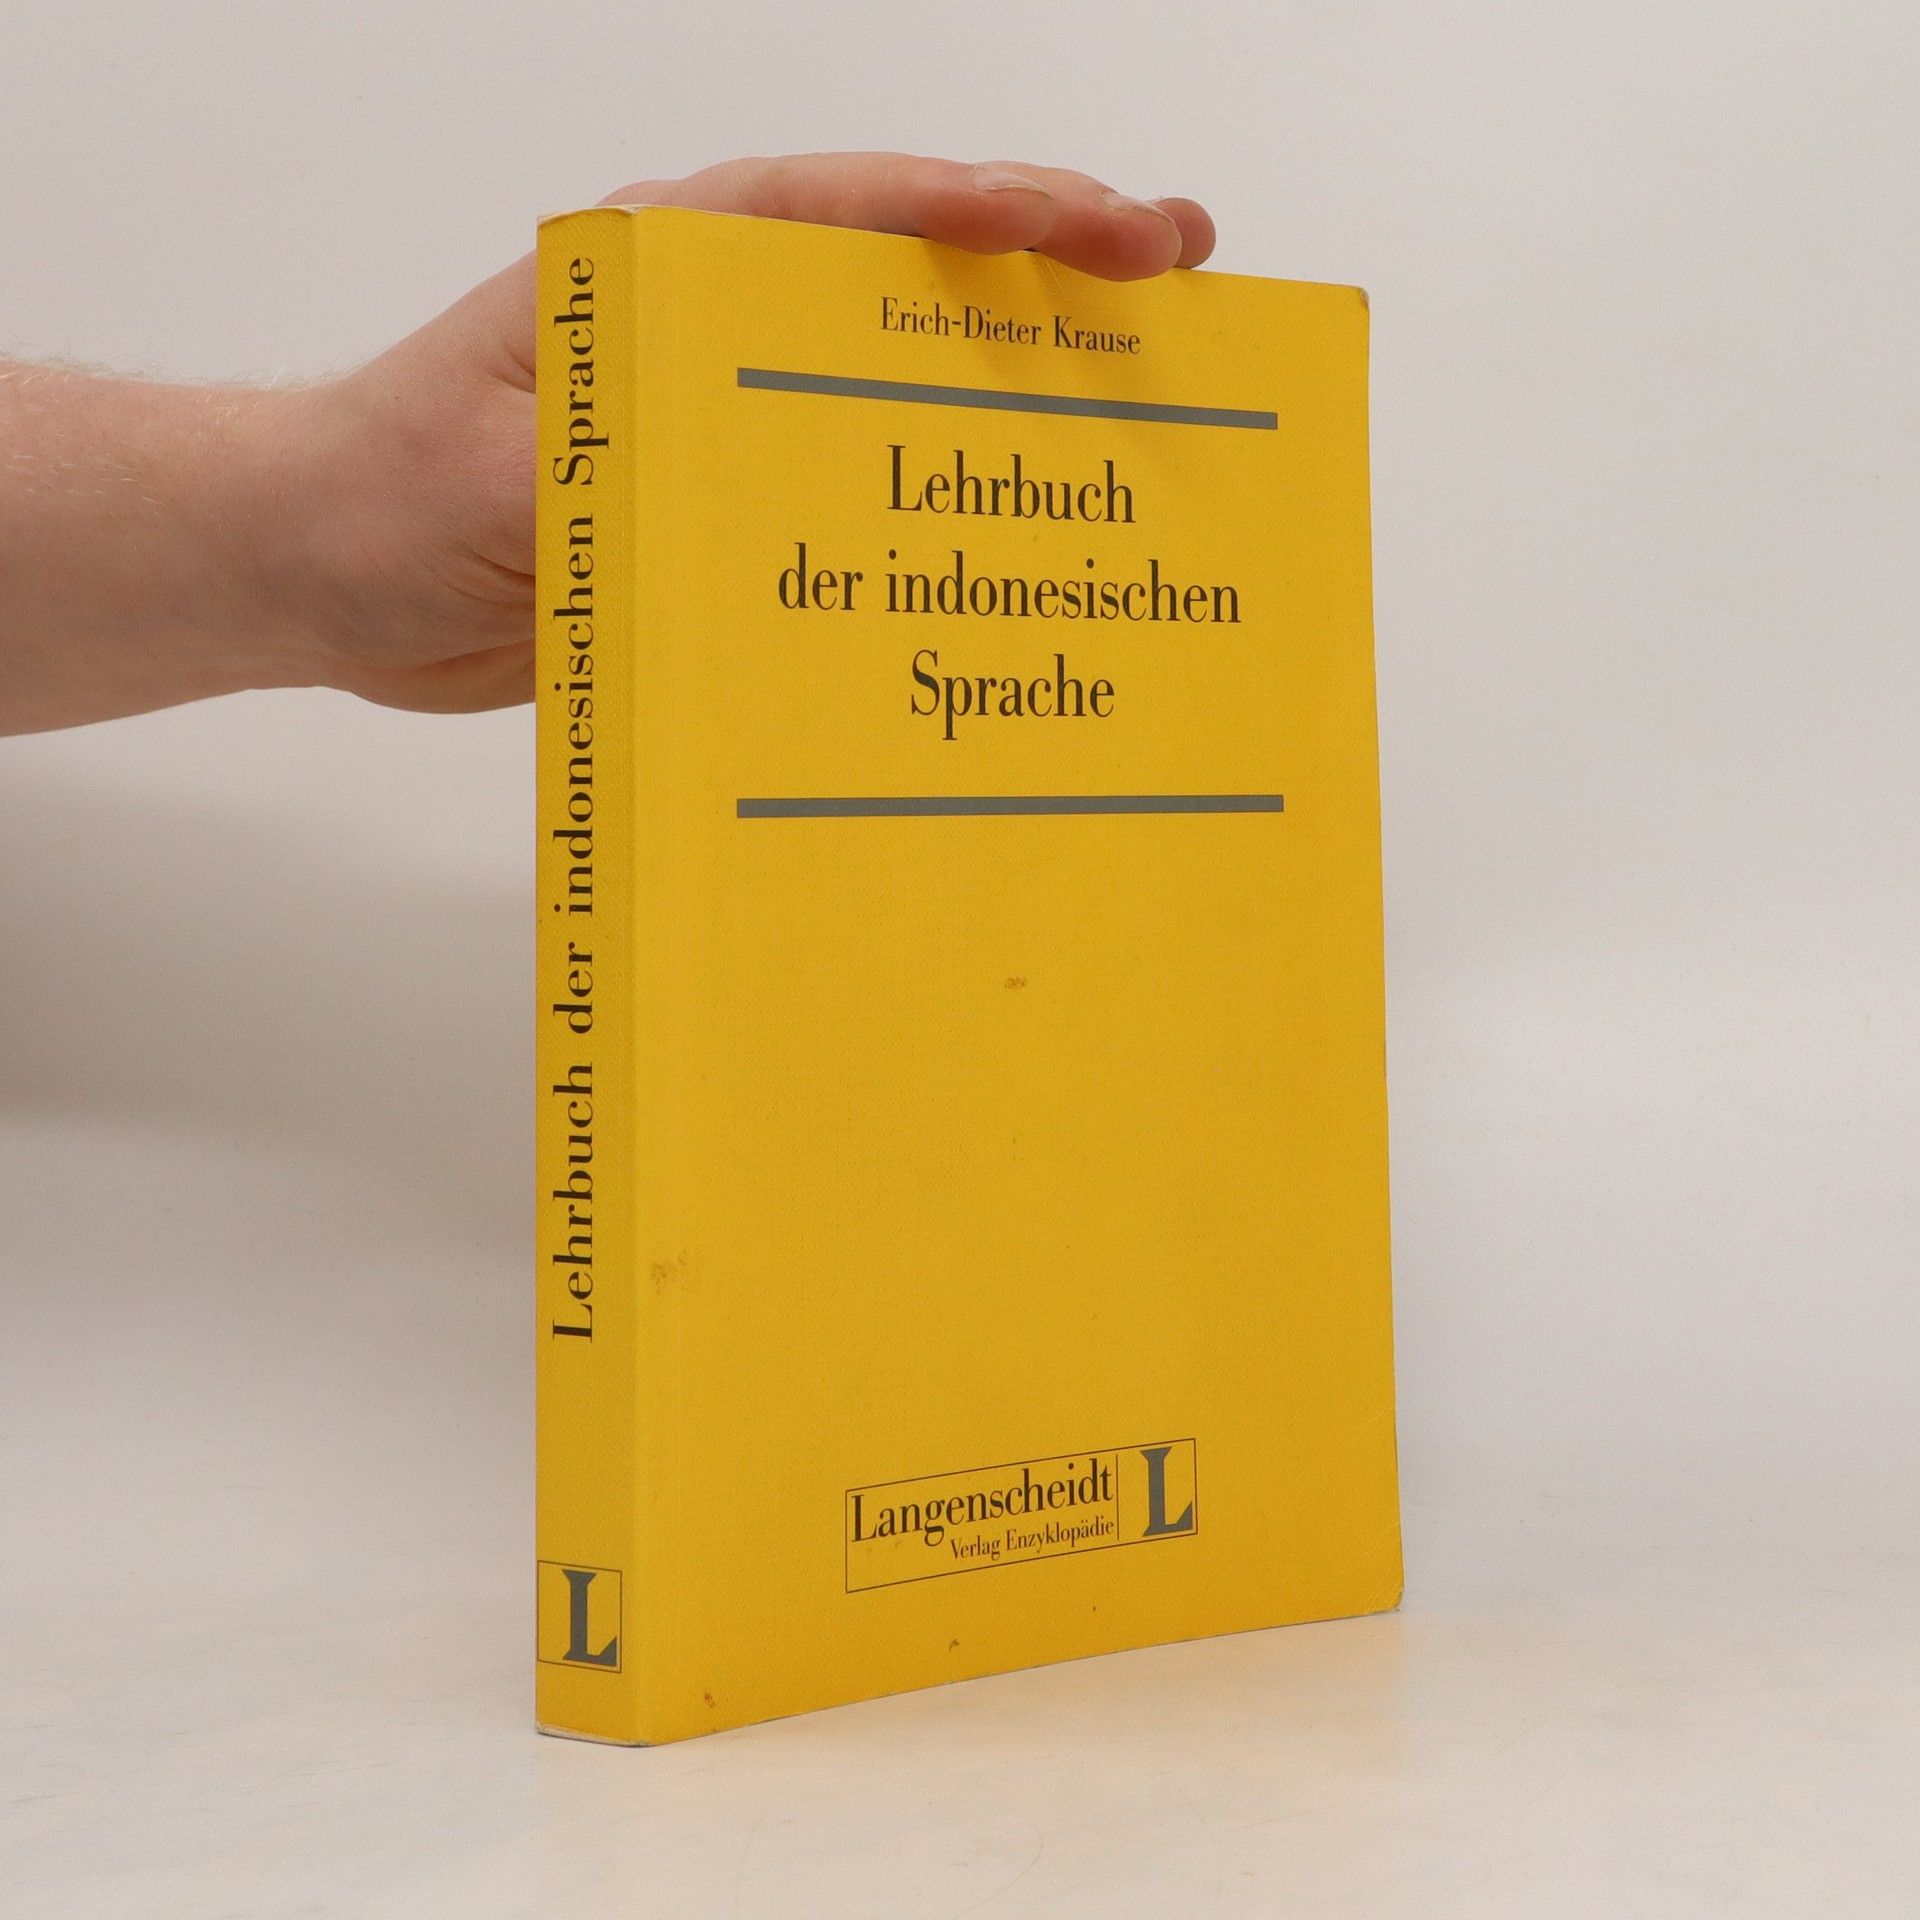 Lehrbuch der indonesischen Sprache - Erich Dieter Krause